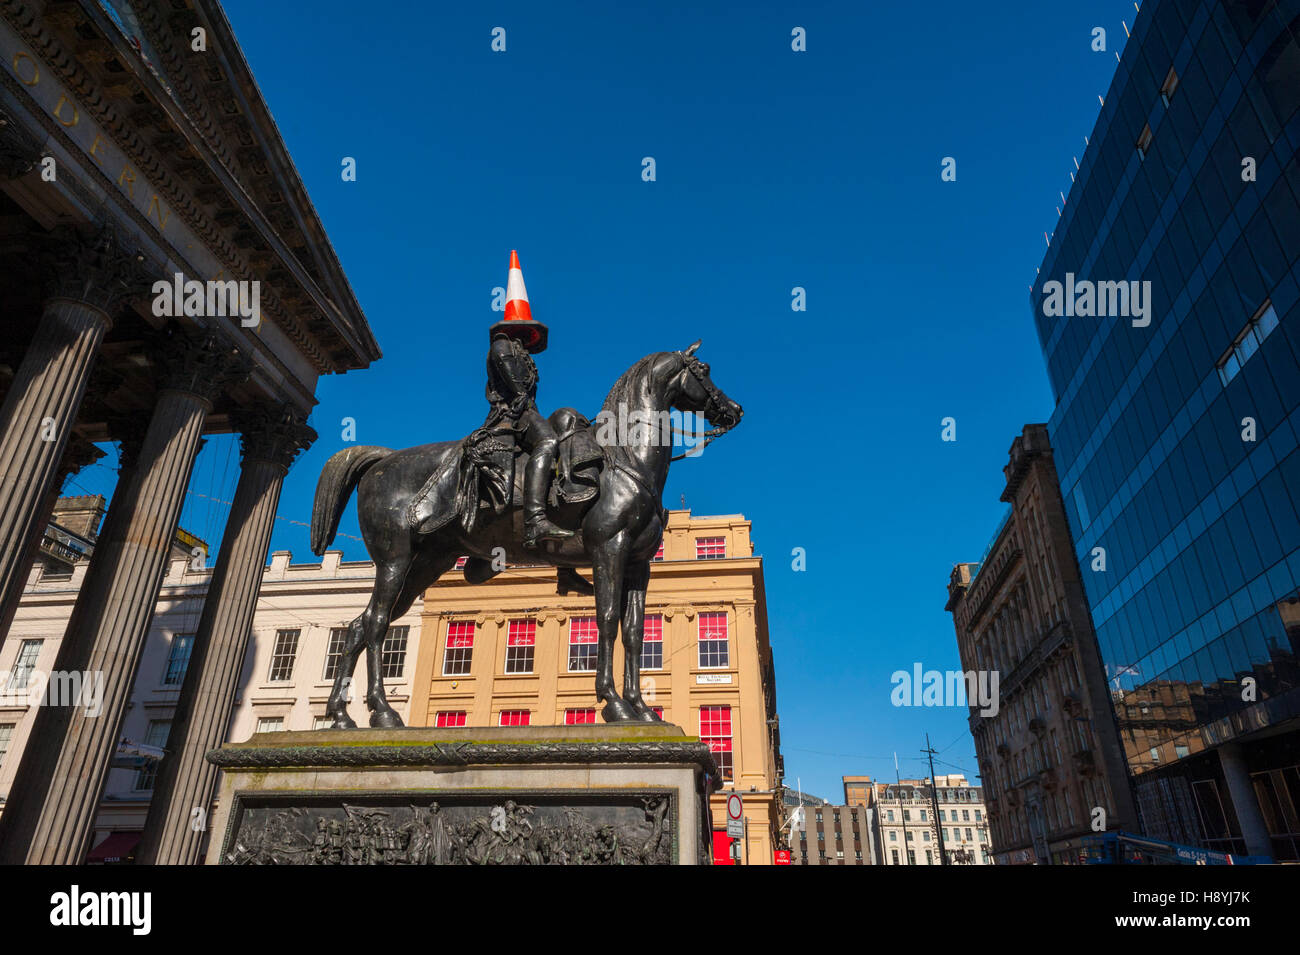 La statue du duc de Wellington à l'extérieur de l'Glagow Museum of Art. La statue a toujours un cône de circulation placé sur sa tête. Banque D'Images